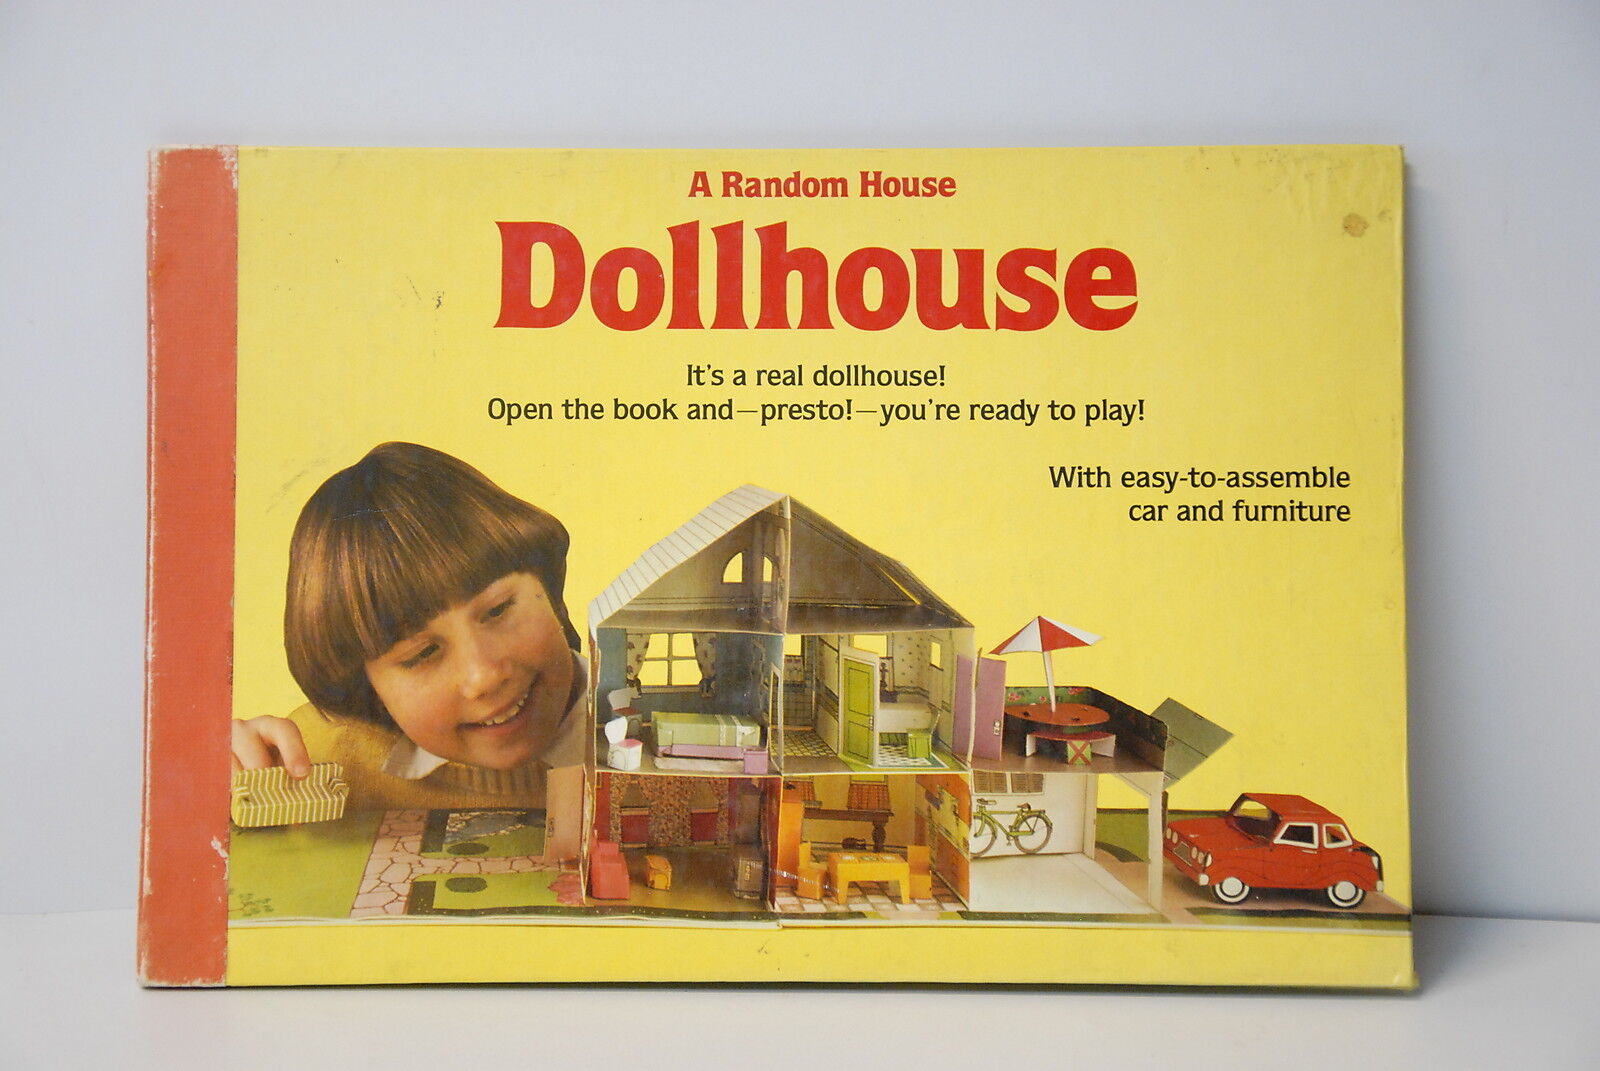 A Random House Dollhouse by Harry Saffren  Sheilah Beckett 1981 Missing Assemble